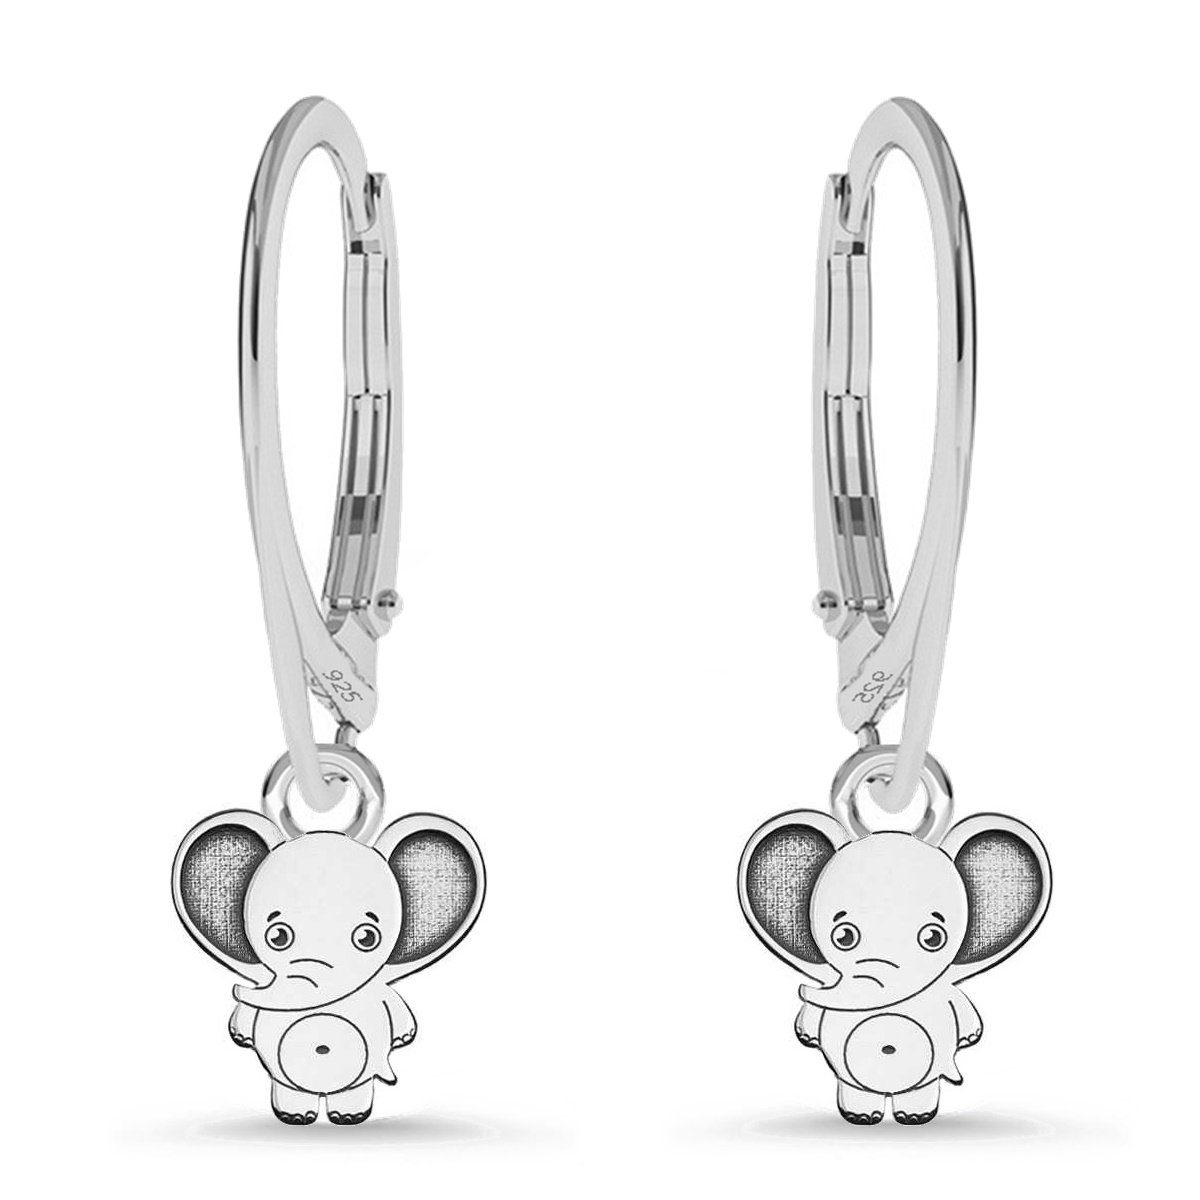 Goldene Hufeisen Paar Ohrhänger Elefant stabile Klapp Brisuren Damen Ohrringe aus 925 Silber Ohrhänger (1 Paar, inkl. Etui), Silberschmuck für Damen